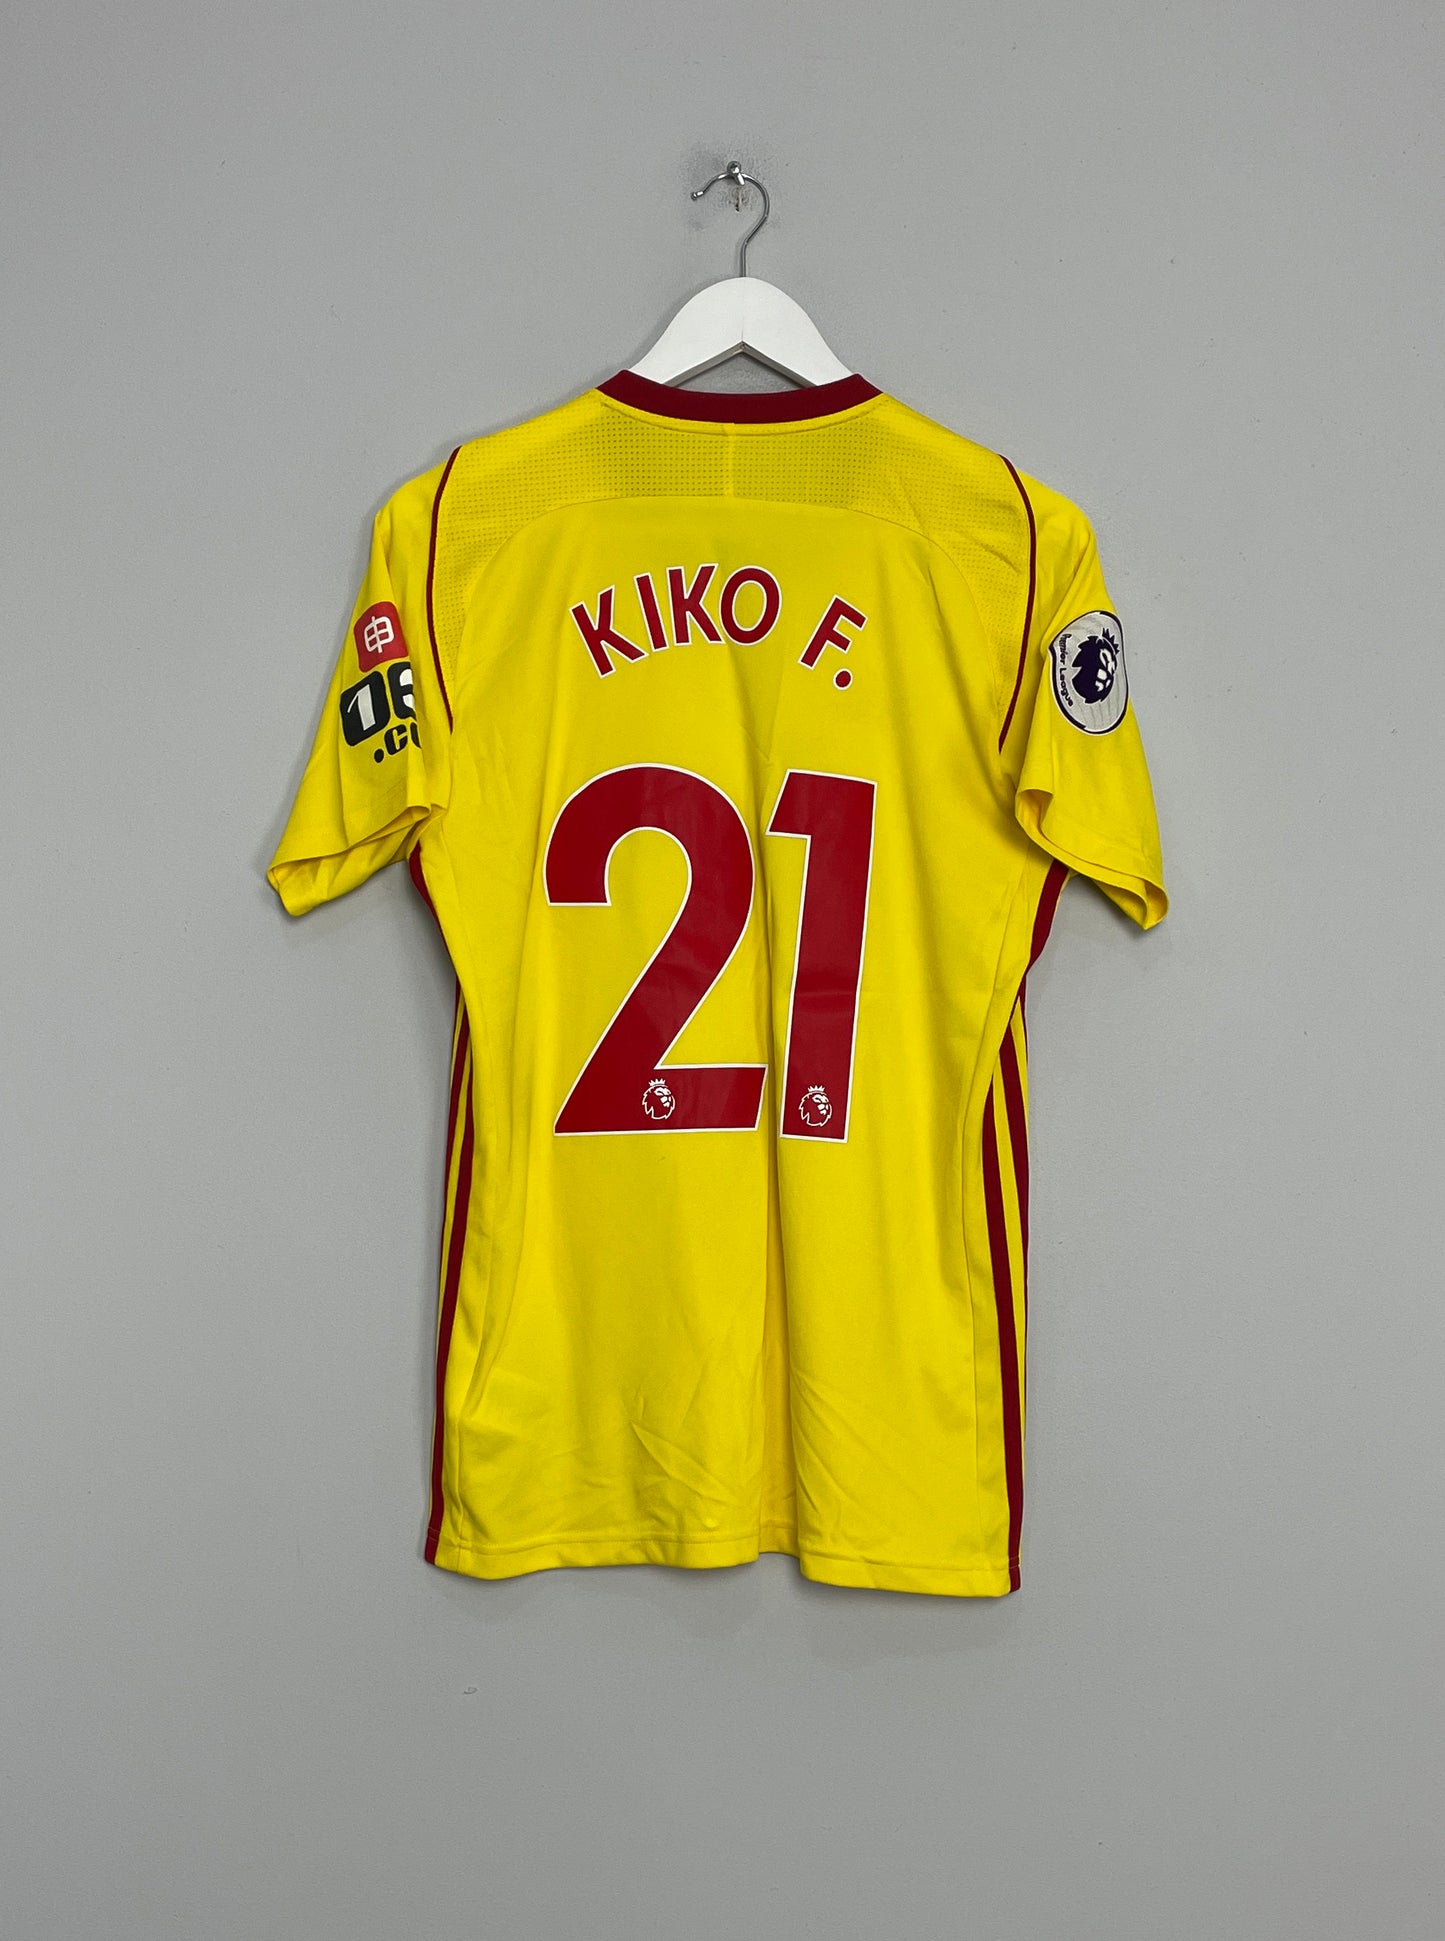 Image of the Watford Kiko shirt from the 2017/18 season